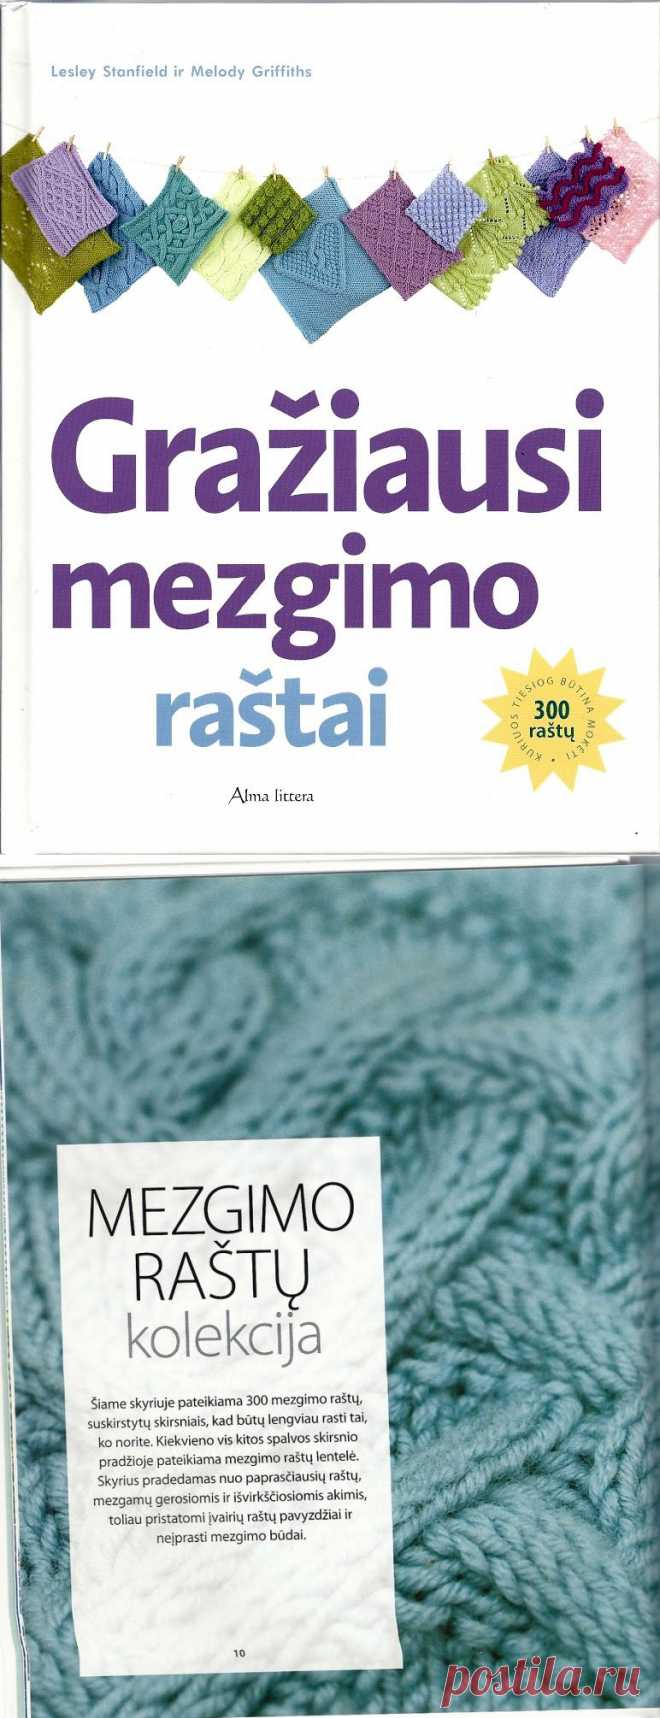 Книга «Graziausi_mezgimo_rastai - книга с узорами спицы»